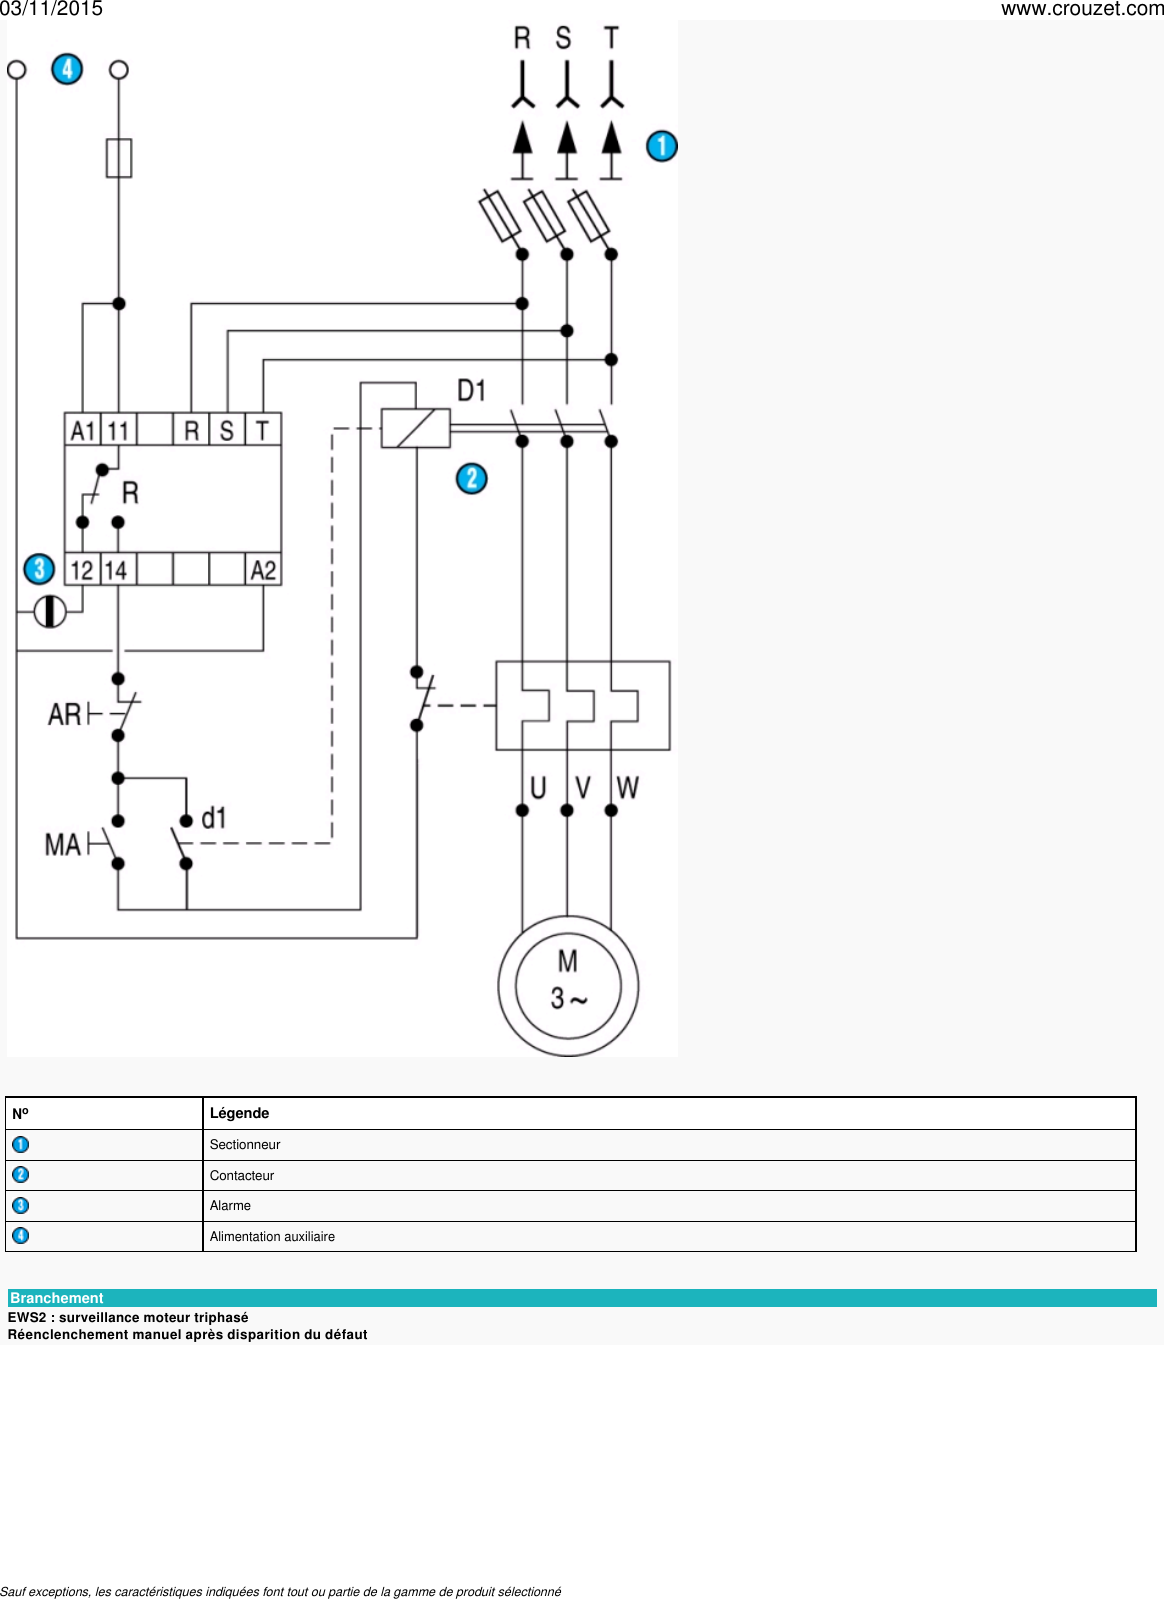 Page 4 of 5 - Relais-de-mesure-et-controle-relais-de-mesure-et-controle-triphase-montage-rail-din-22-5-mm-ordre-et-absence-de-phase-ews2-Ref-8